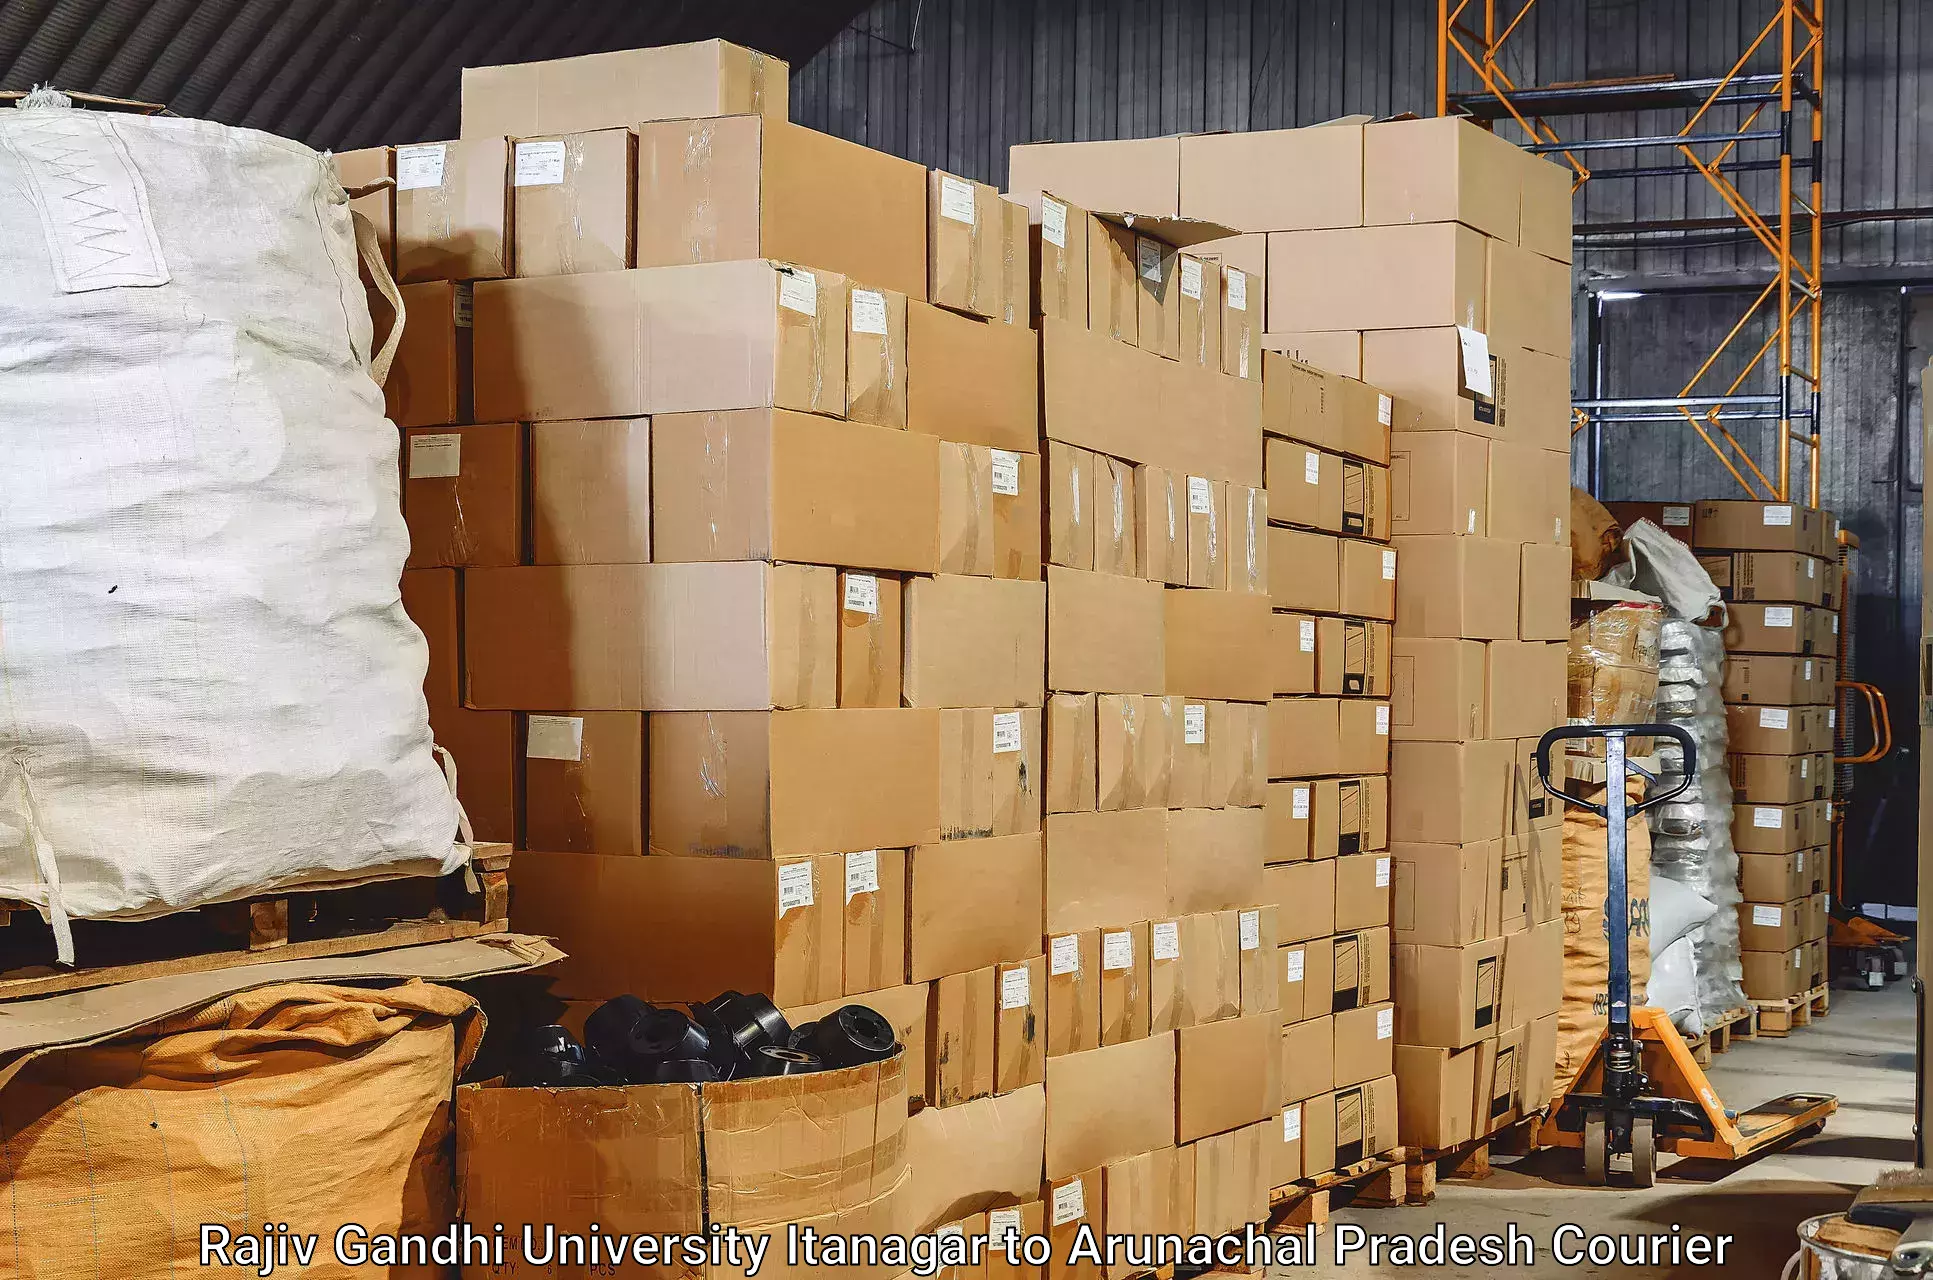 Baggage transport scheduler Rajiv Gandhi University Itanagar to Lower Subansiri